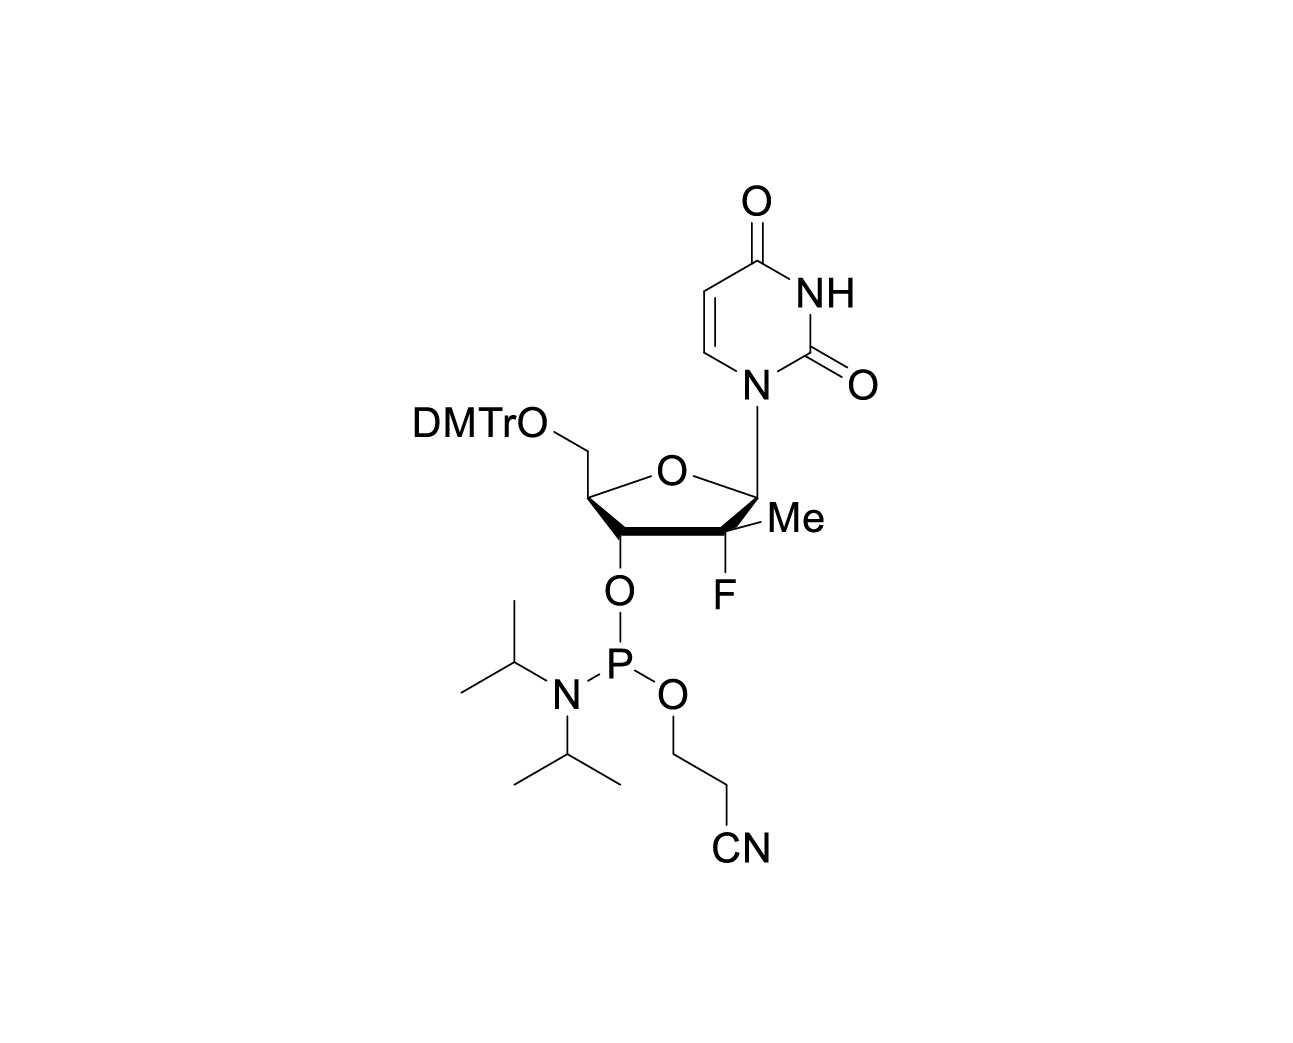 DMTr-(2'R)-2'-F-2'-Me-dU-3'-CE-Phosphoramidite